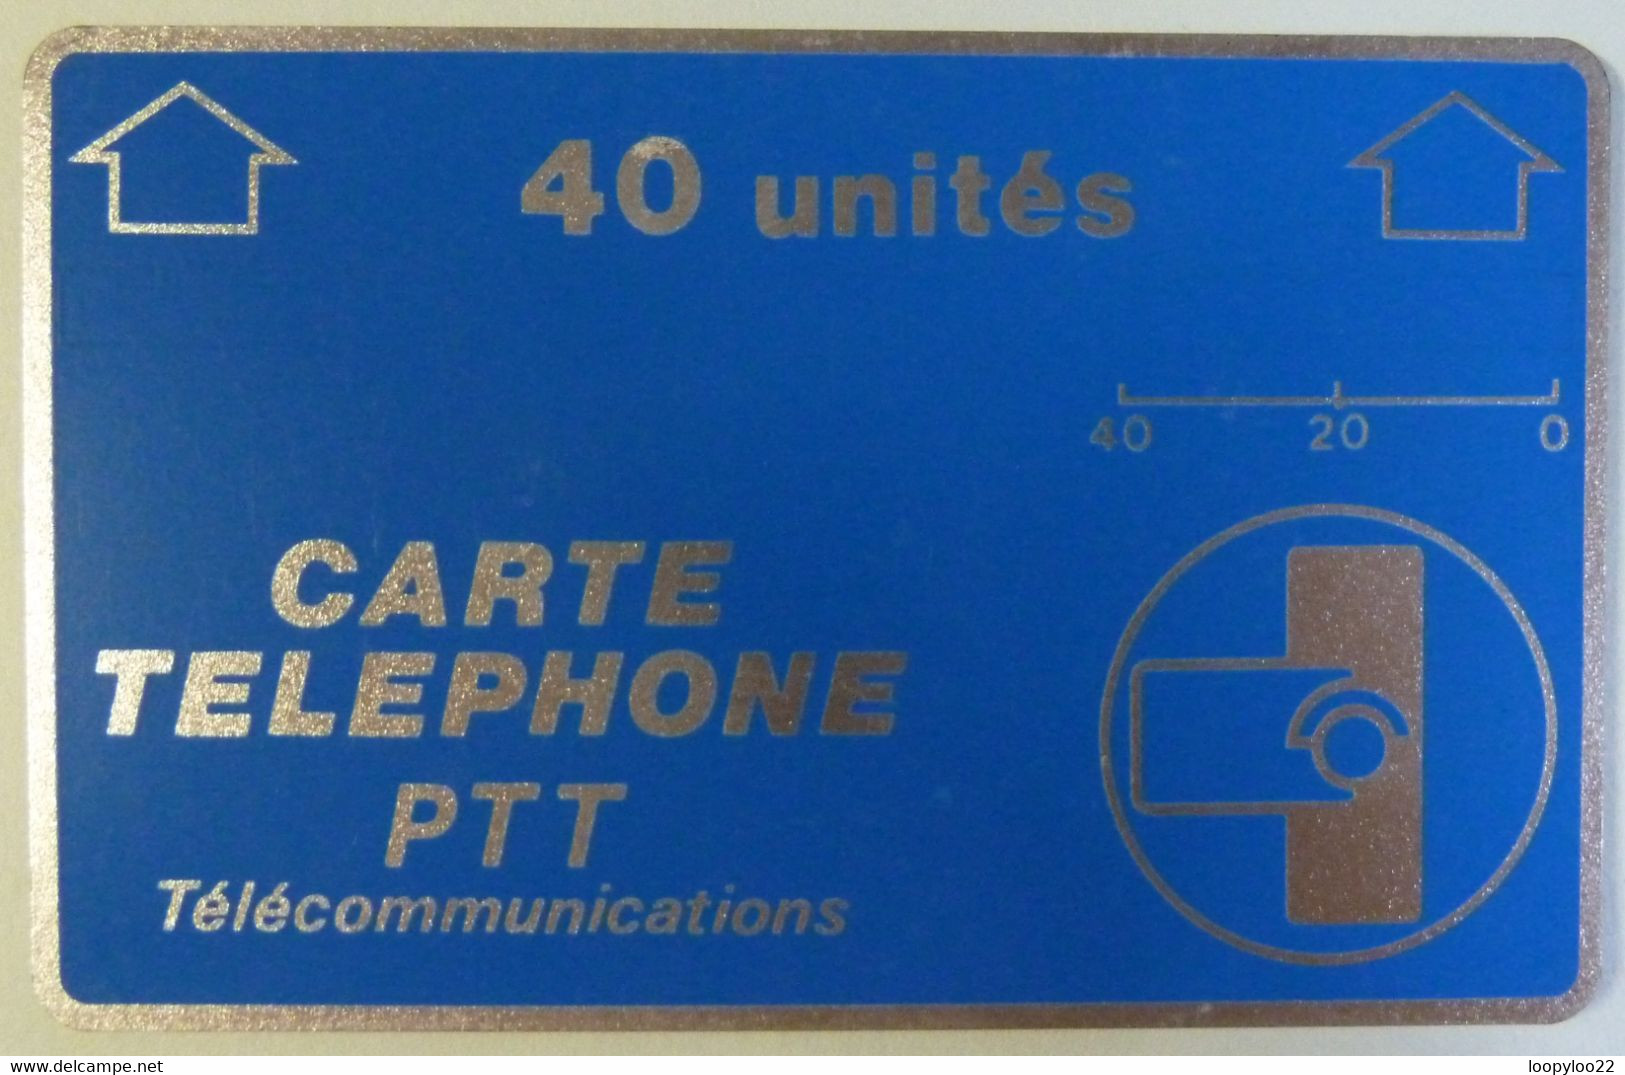 FRANCE - Landis & Gyr - Carte Telephone PTT - Dec 1985 - 40 Units - A14 - Used - Interner Gebrauch